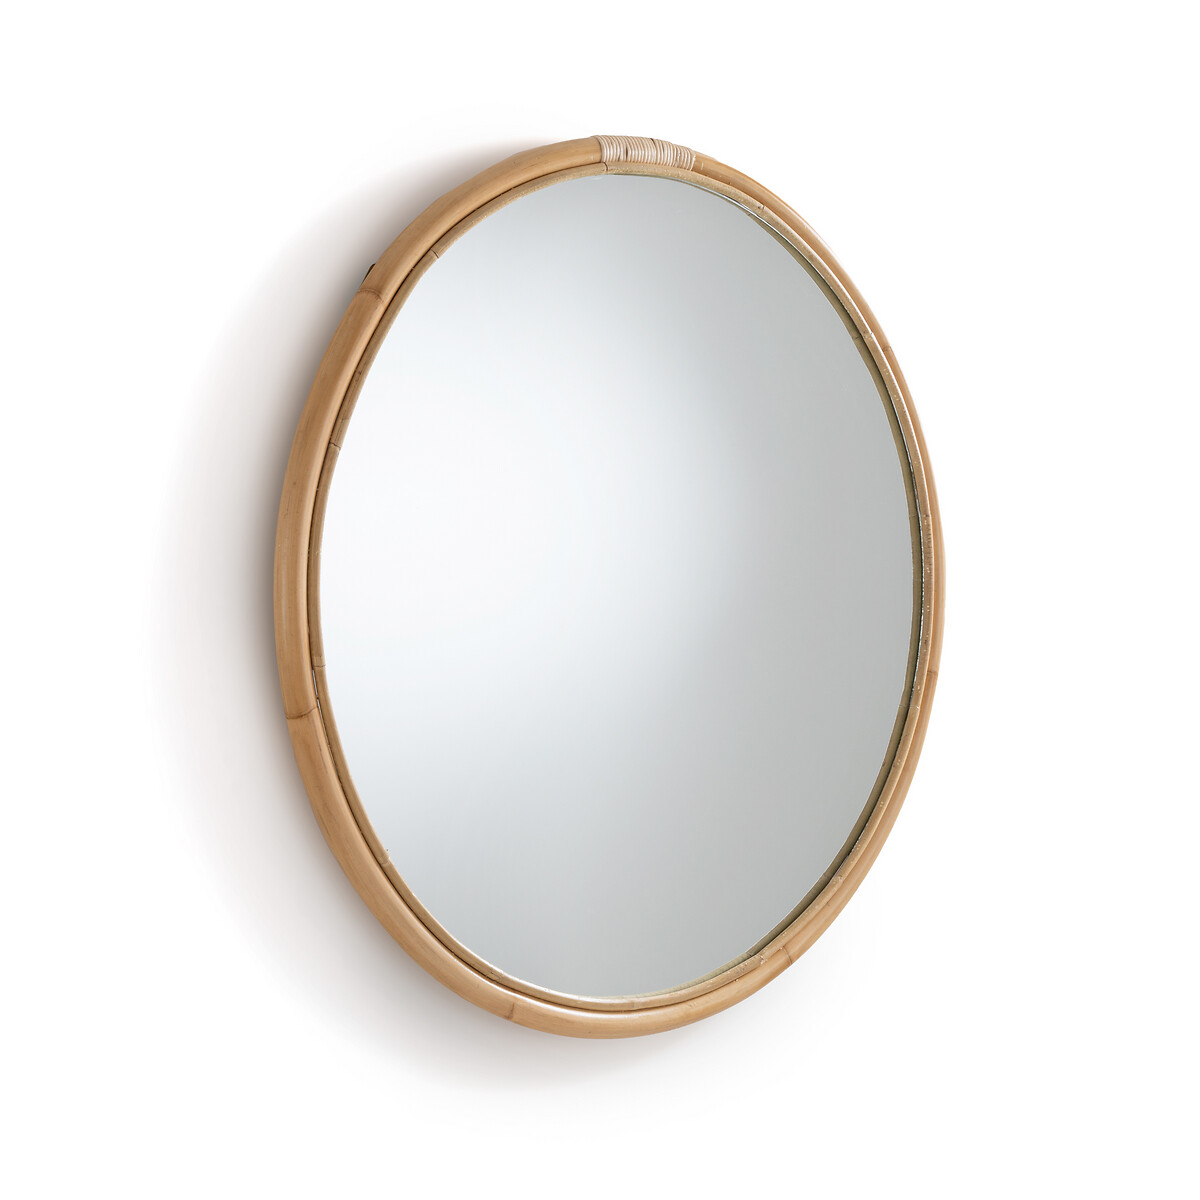 Зеркало круглое из ротанга 90 см Nogu единый размер бежевый зеркало из ротанга nogu единый размер бежевый